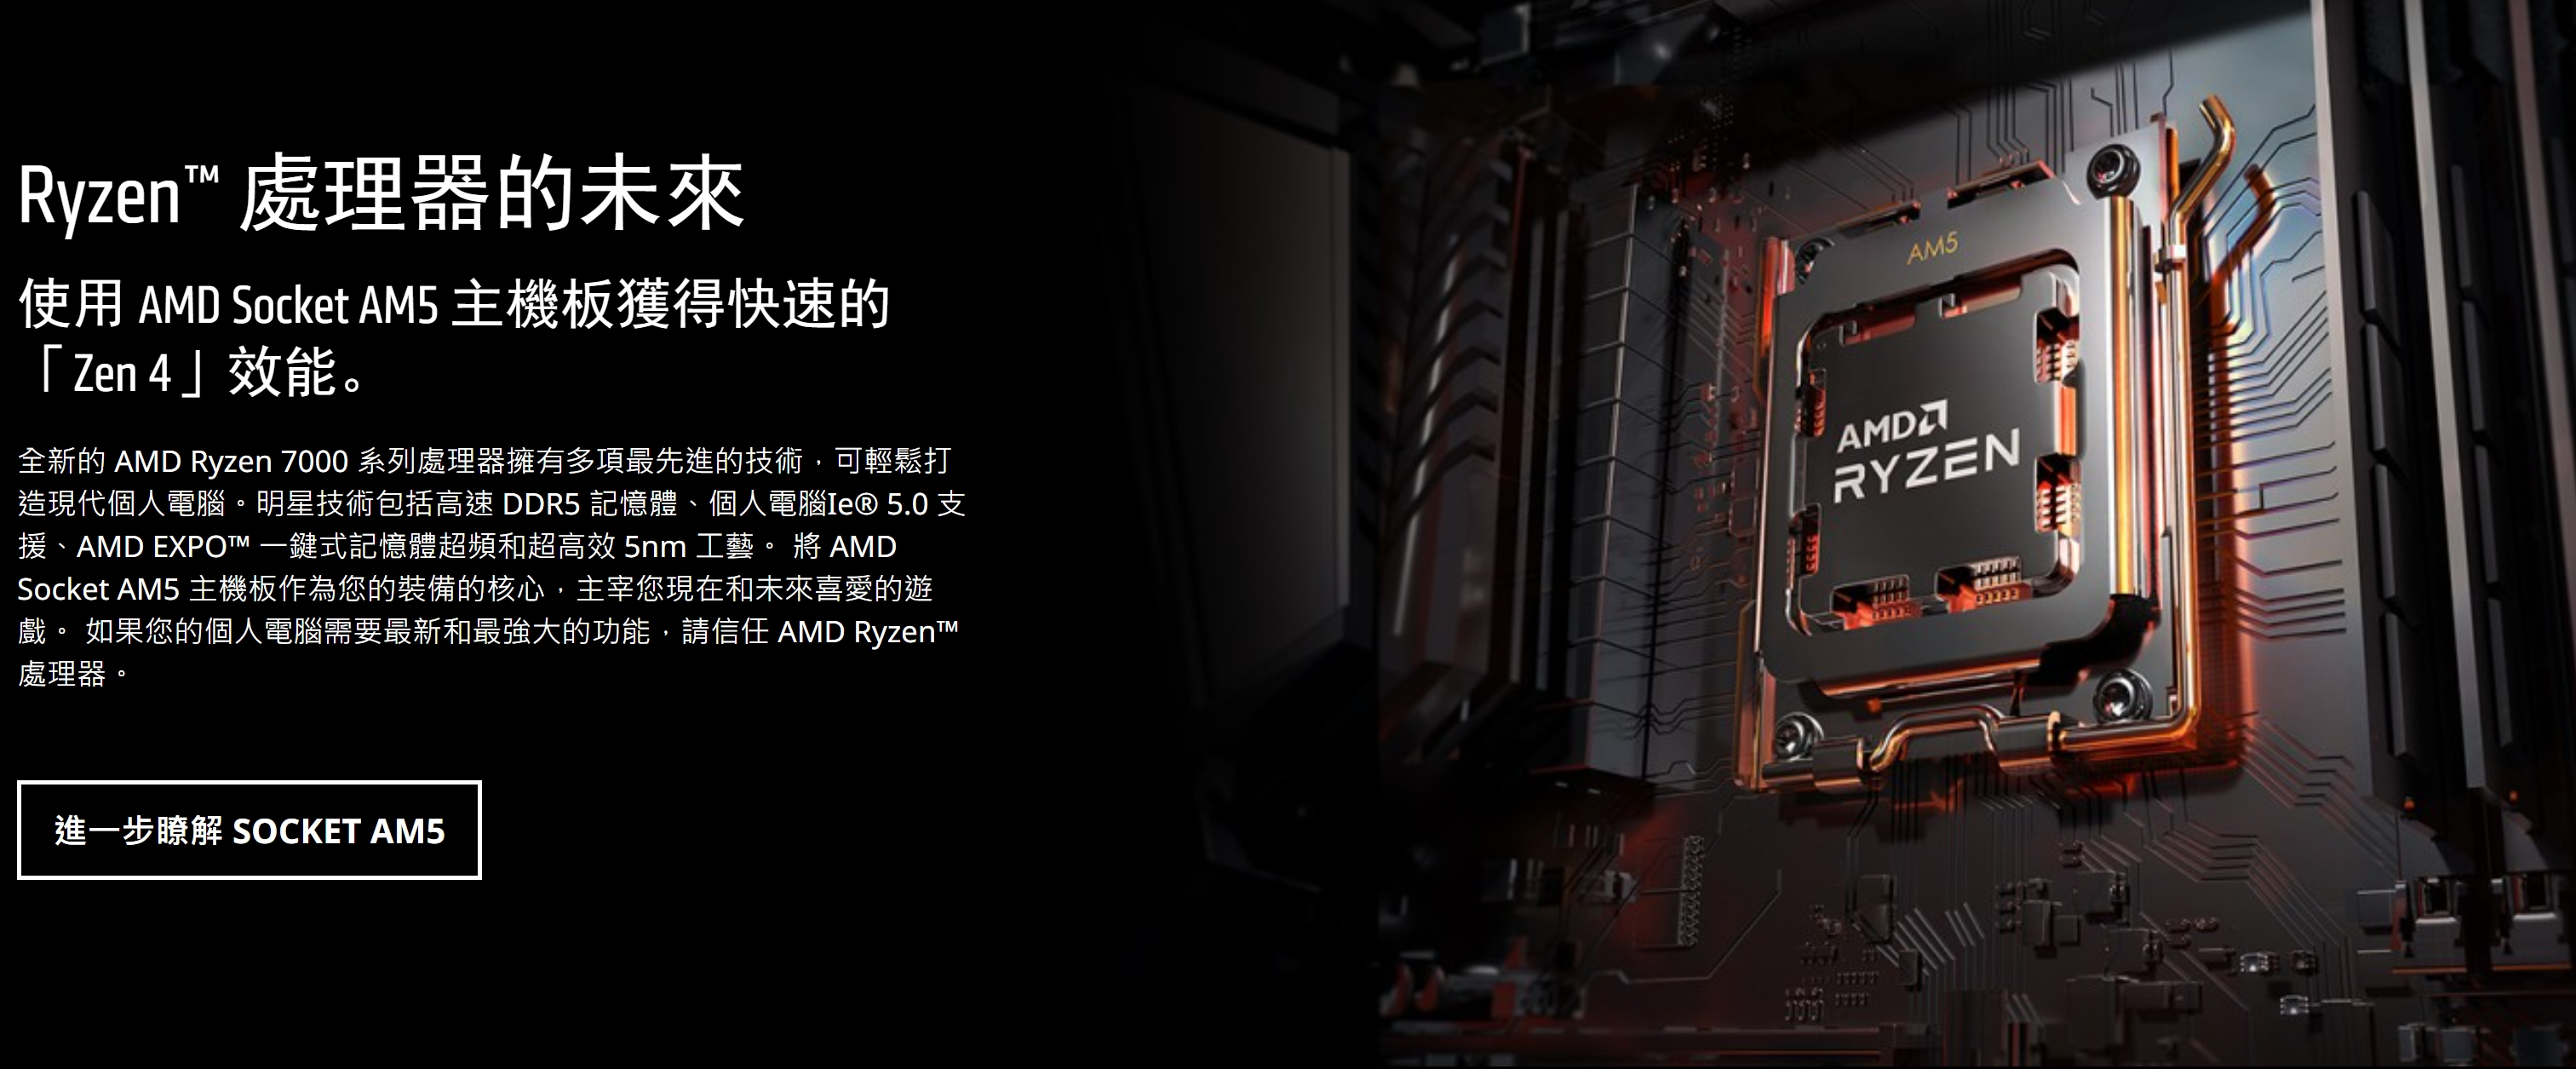 AMD Ryzen 7000 Info on the AMD Official Website